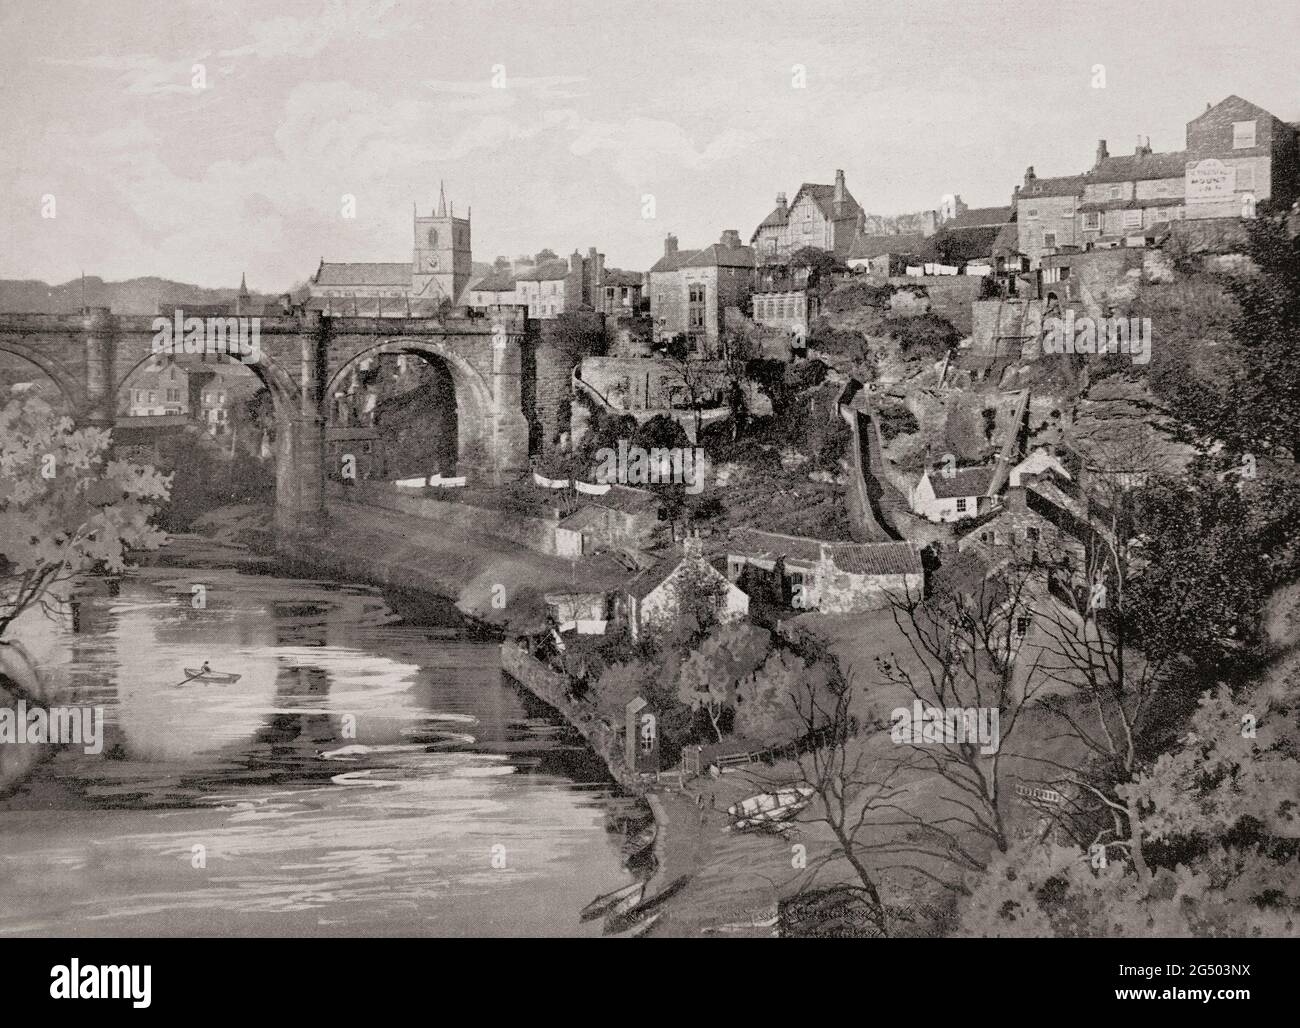 Ein Blick aus dem späten 19. Jahrhundert auf den Eisenbahnviadukt über den Fluss Nidd und die Bergstadt Knaresborough, einem Markt und Spa in North Yorkshire, England. Stockfoto